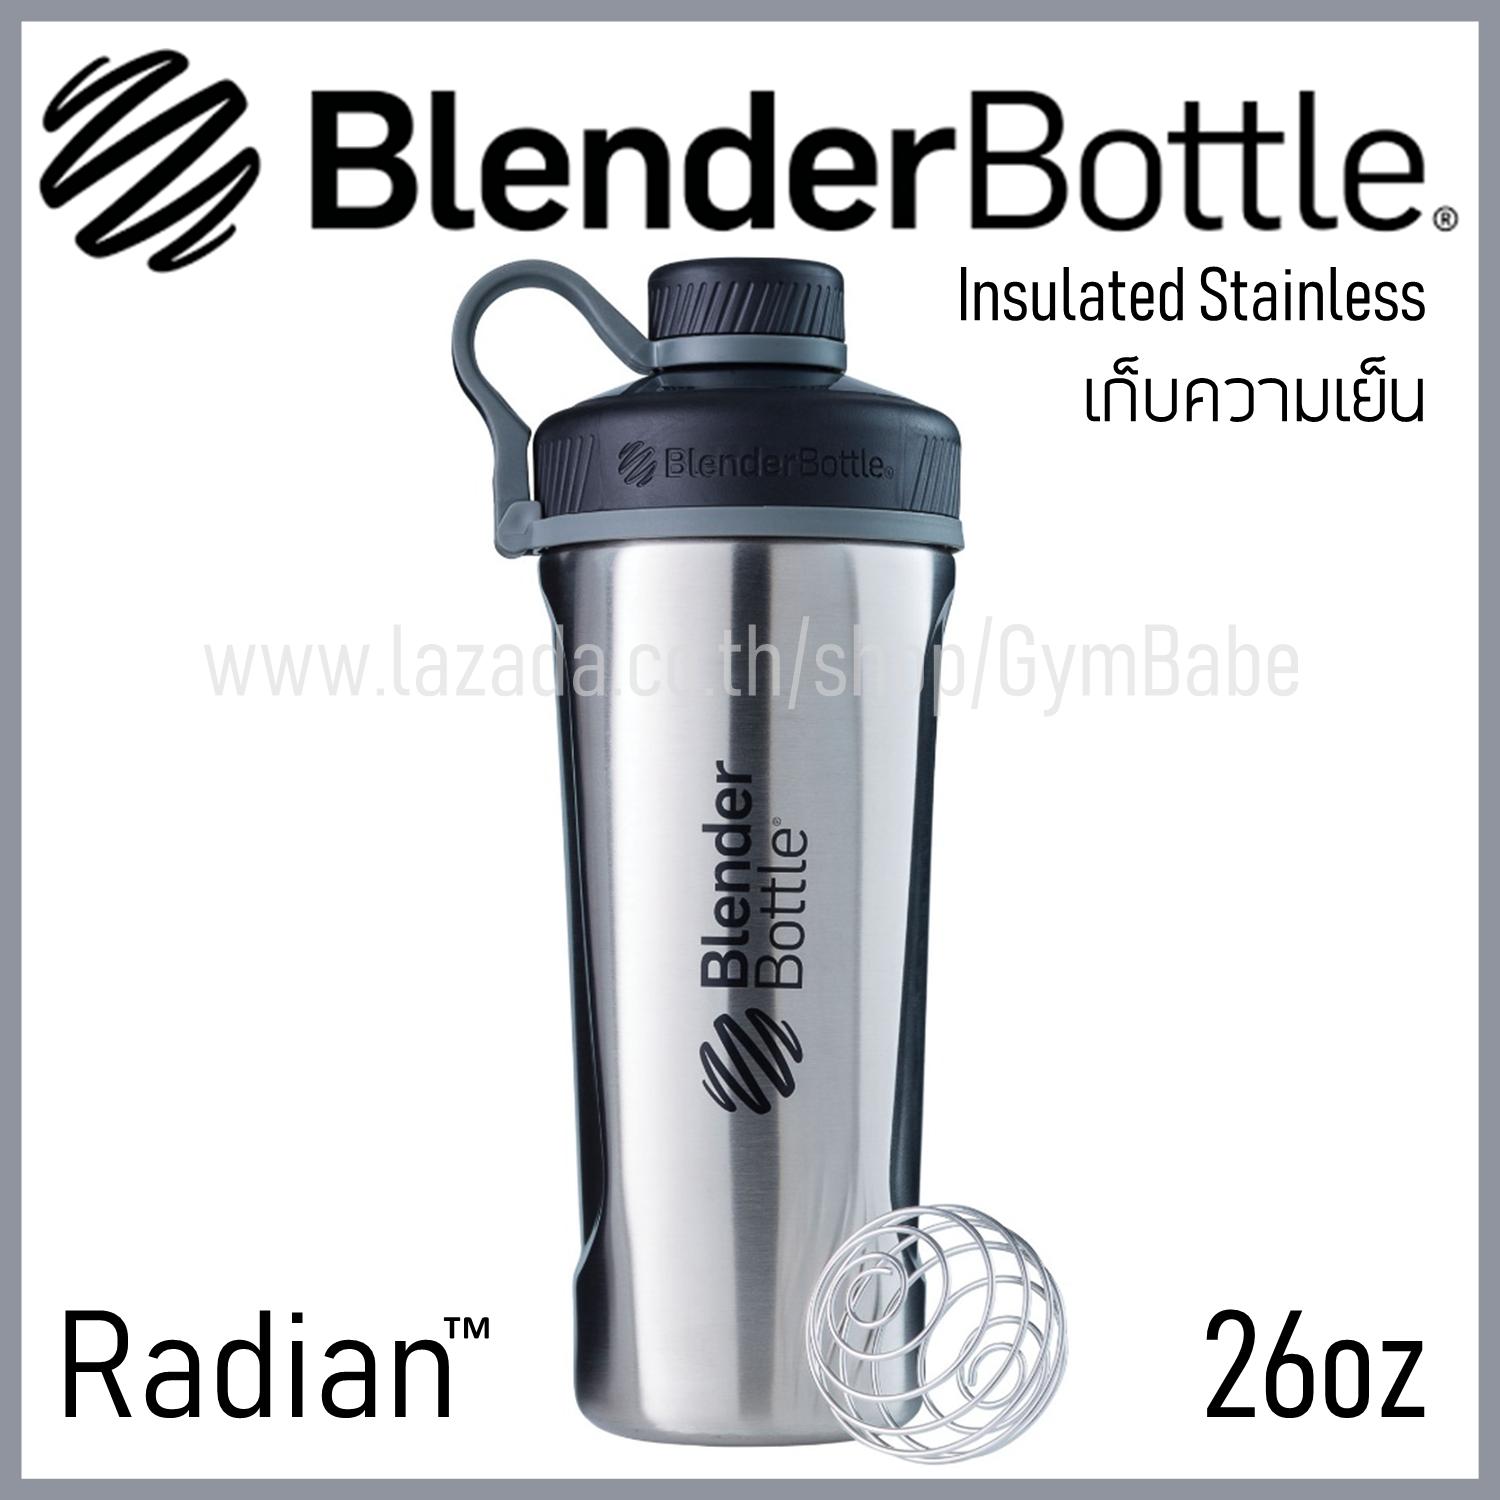 (สีStainless) BlenderBottle Radian Insulated Stainless Steel แก้วShakeเก็บความเย็นได้ ของแท้ Blender Bottle นำเข้าจากอเมริกา